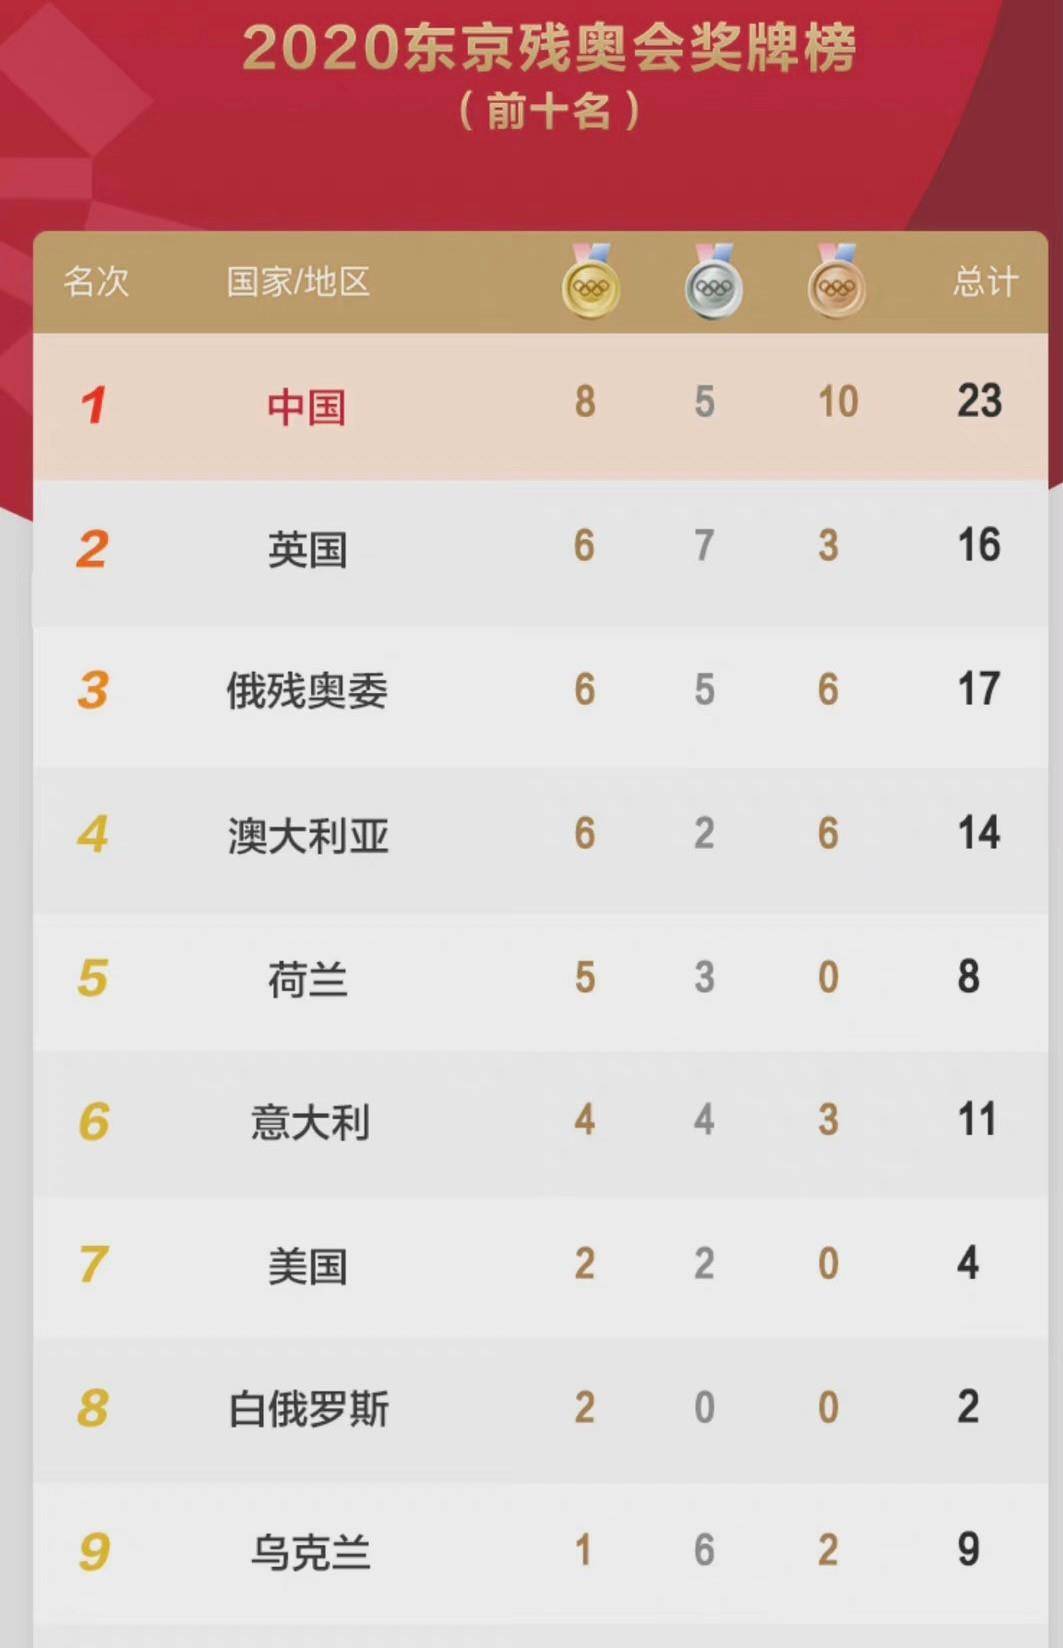 北京时间8月26日晚,东京残奥会结束第二比赛日的争夺之后,最新奖牌榜